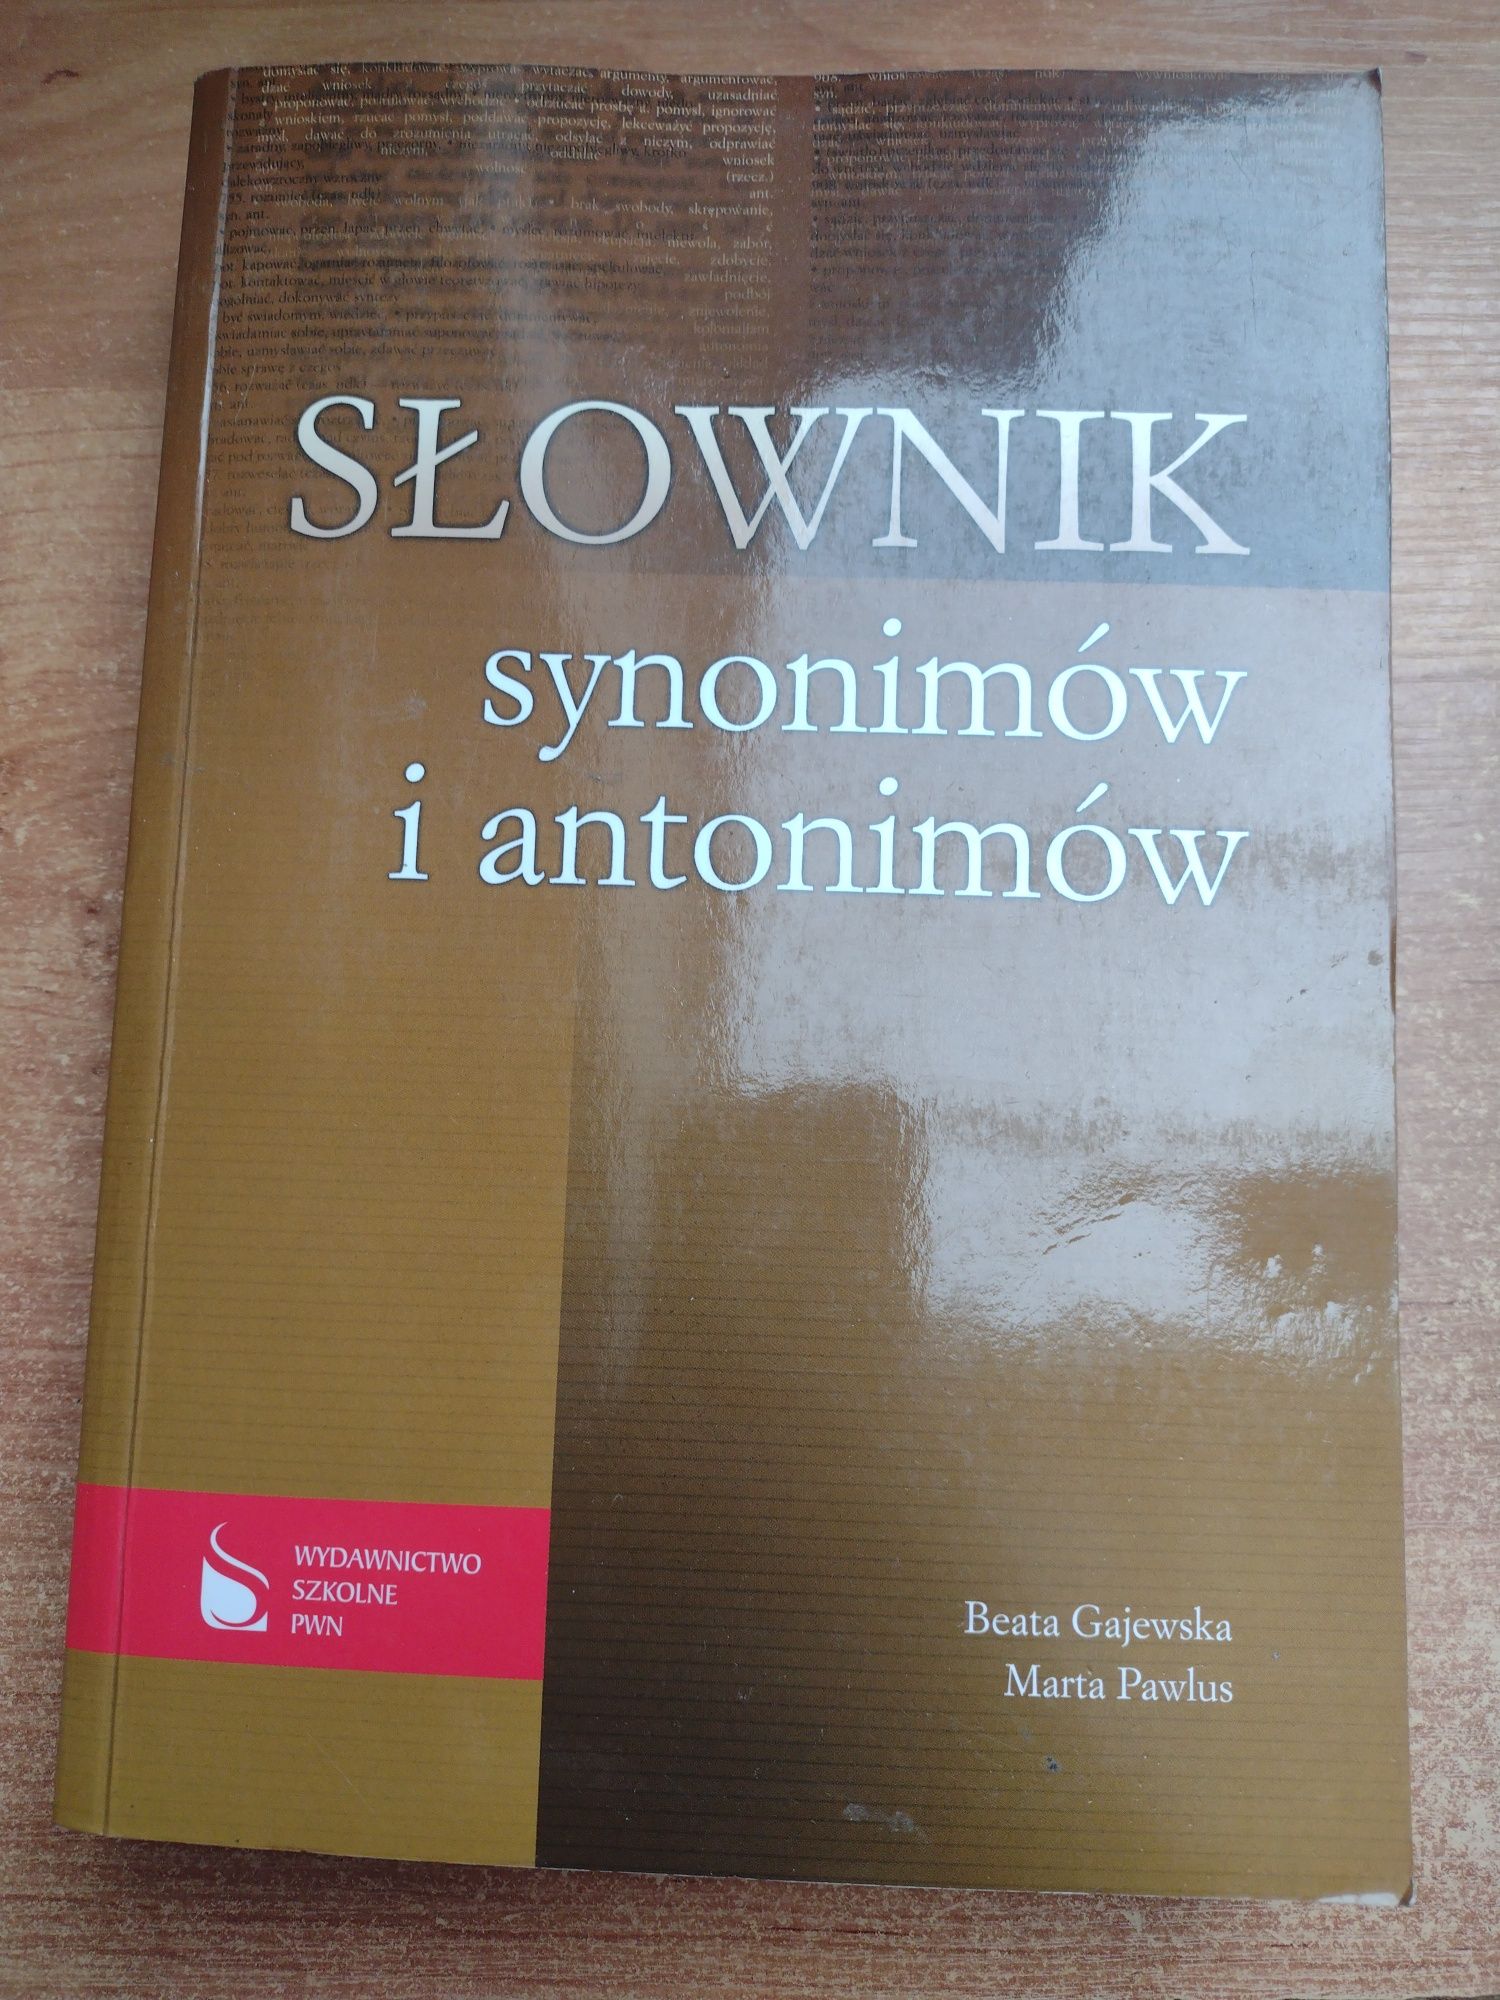 Słownik synonimów i antonimów Beata Gajewska, Marta Pawlus PWN